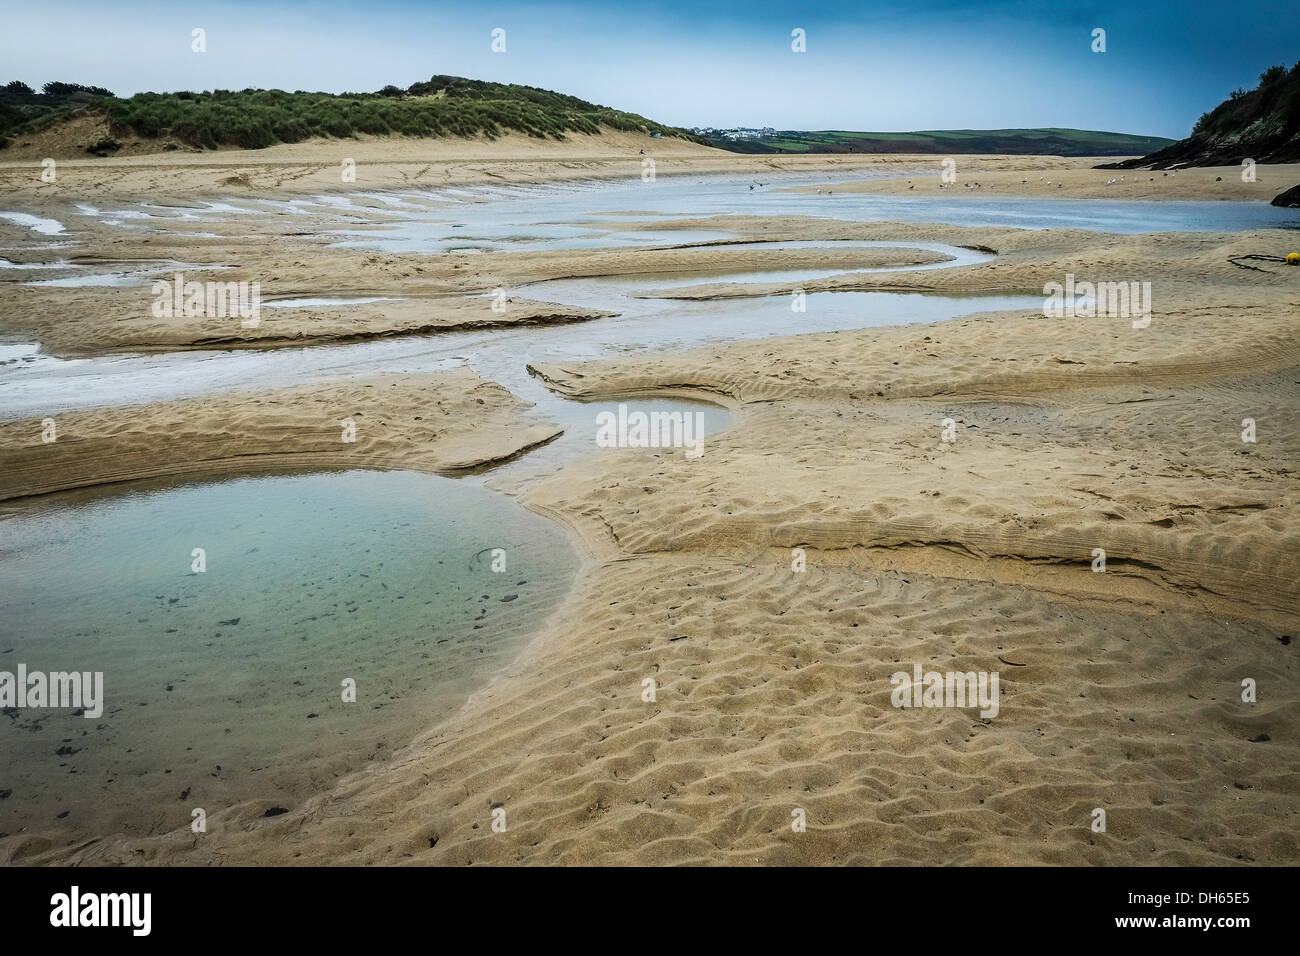 El lecho del río Gannel expuestos en la marea baja. Foto de stock